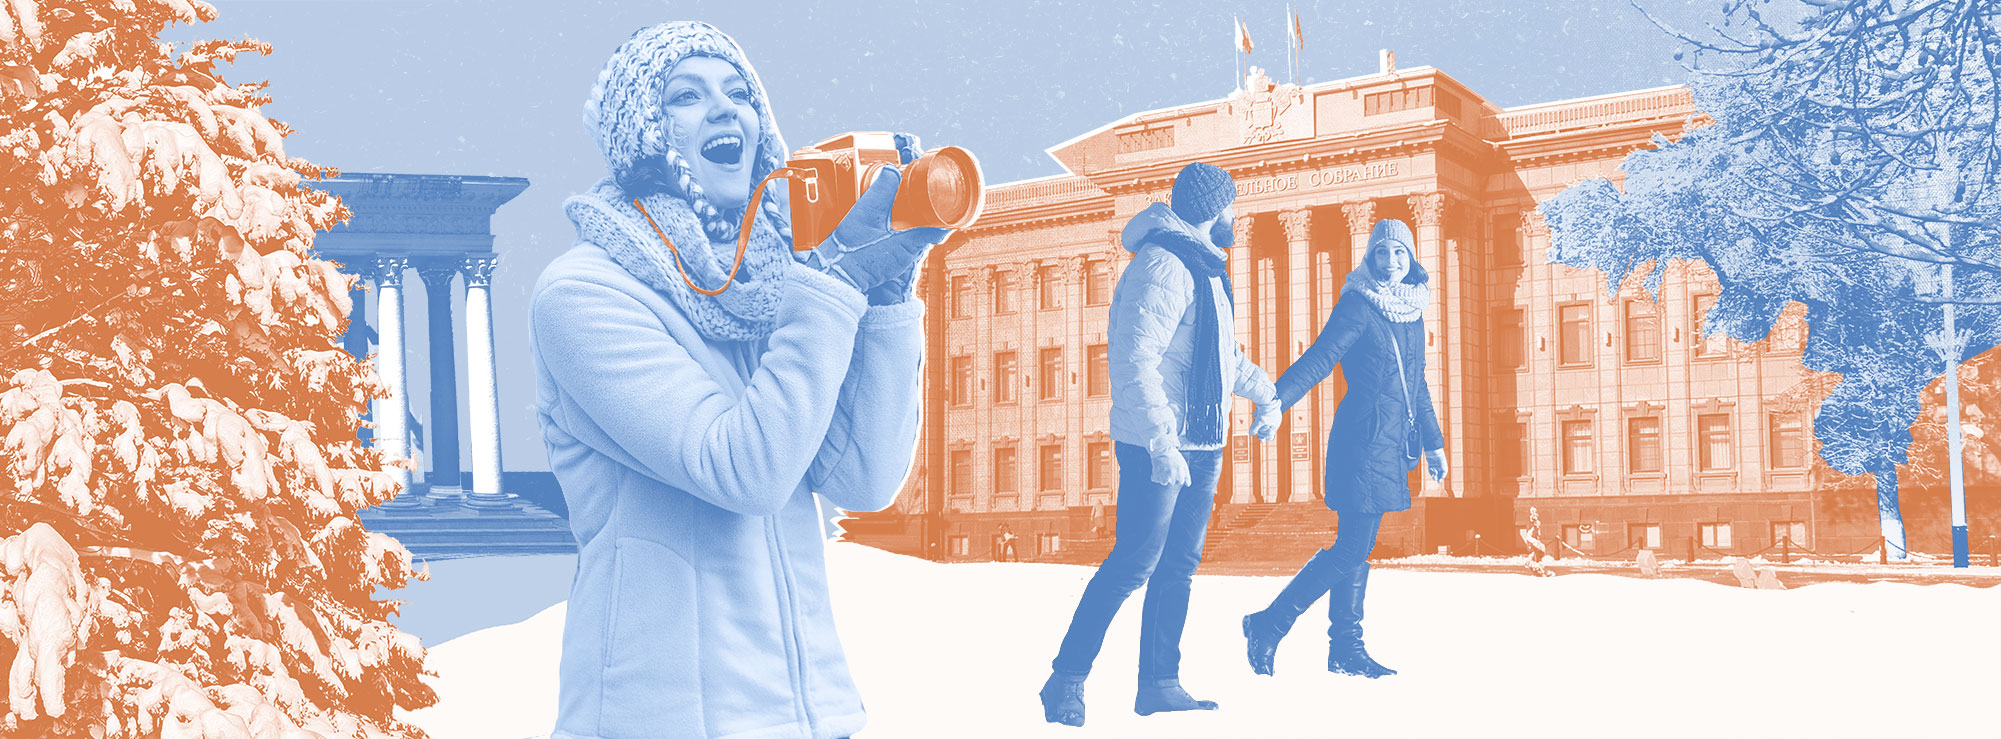 Полноразмерная обложка поста на тему: Как посетить почти все достопримечательности Краснодара пешком